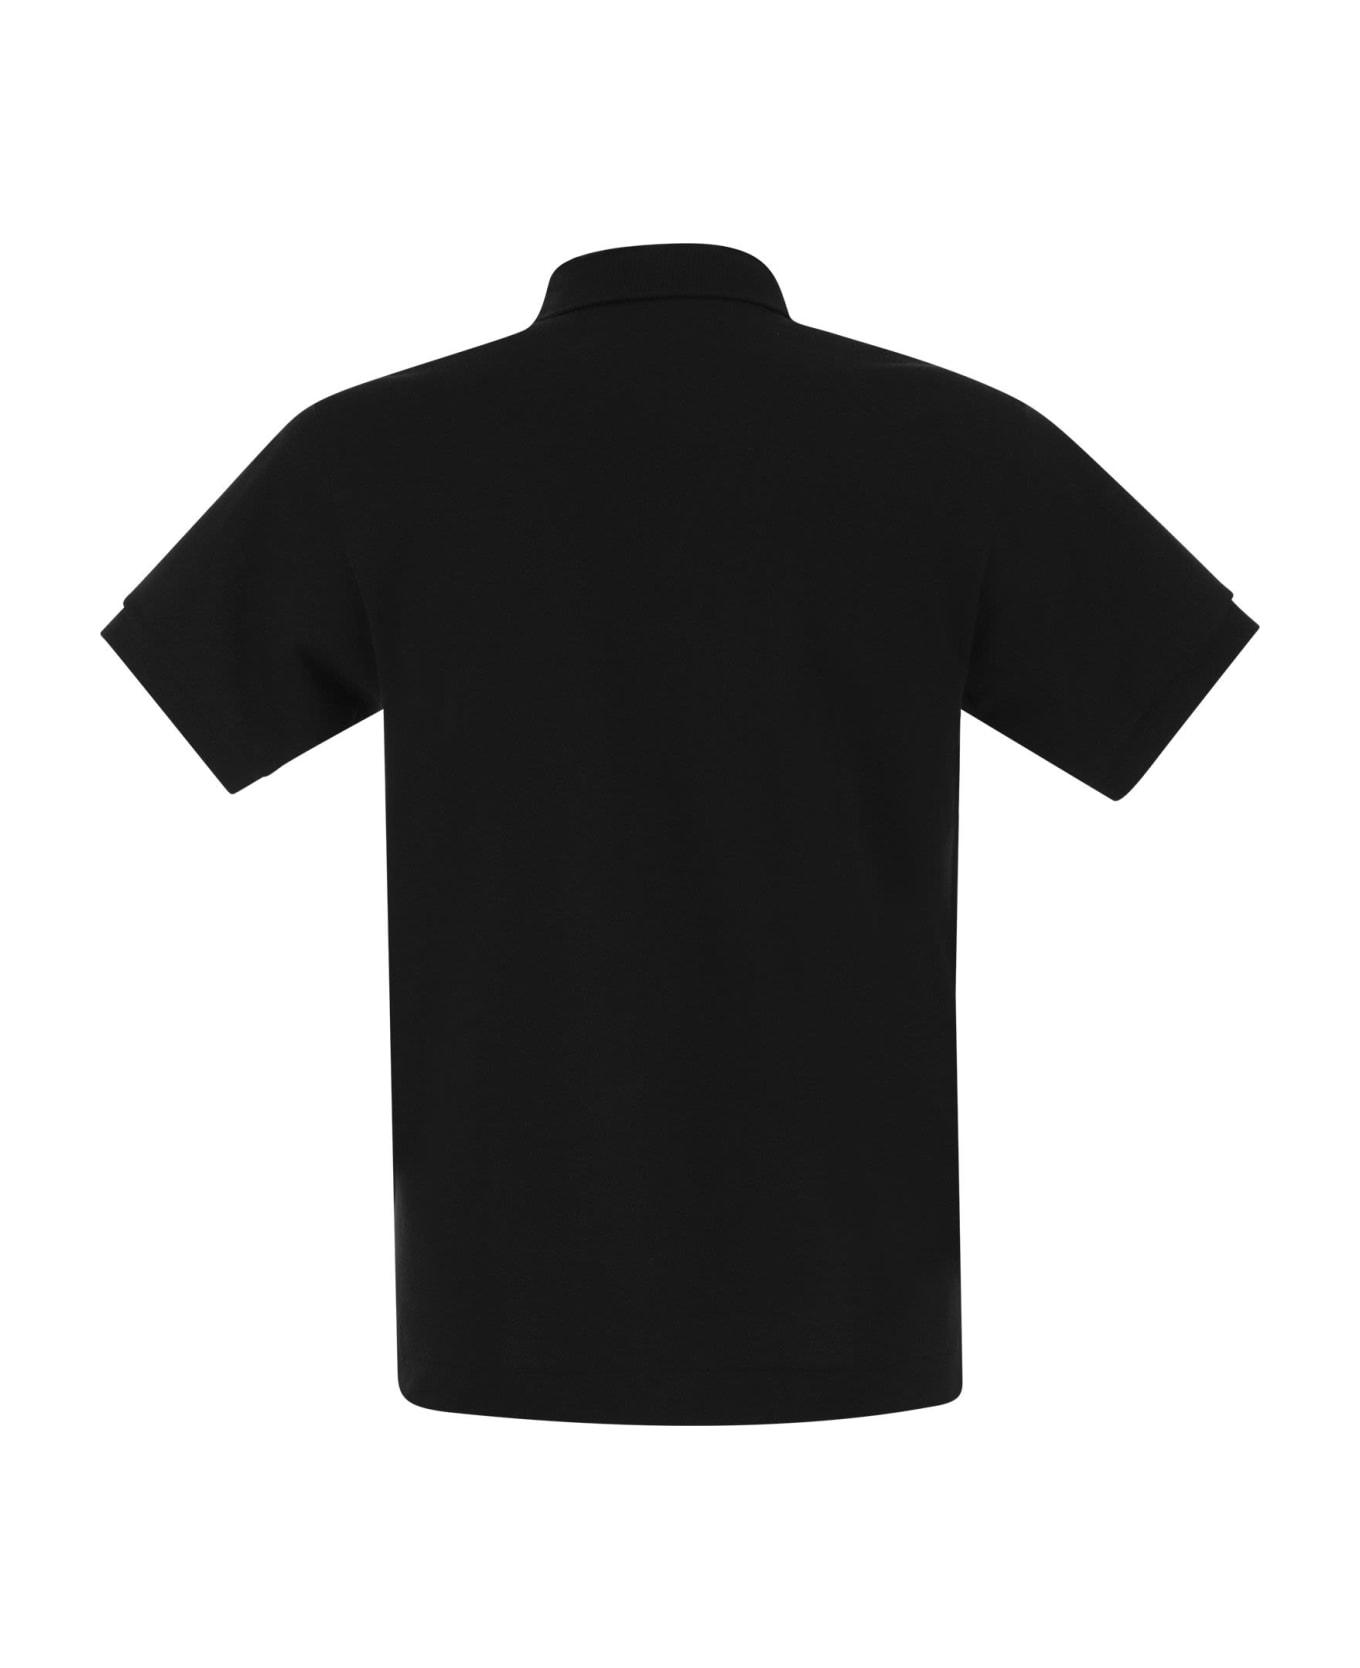 Lacoste Classic Fit Cotton Pique Polo The Shirt - Black